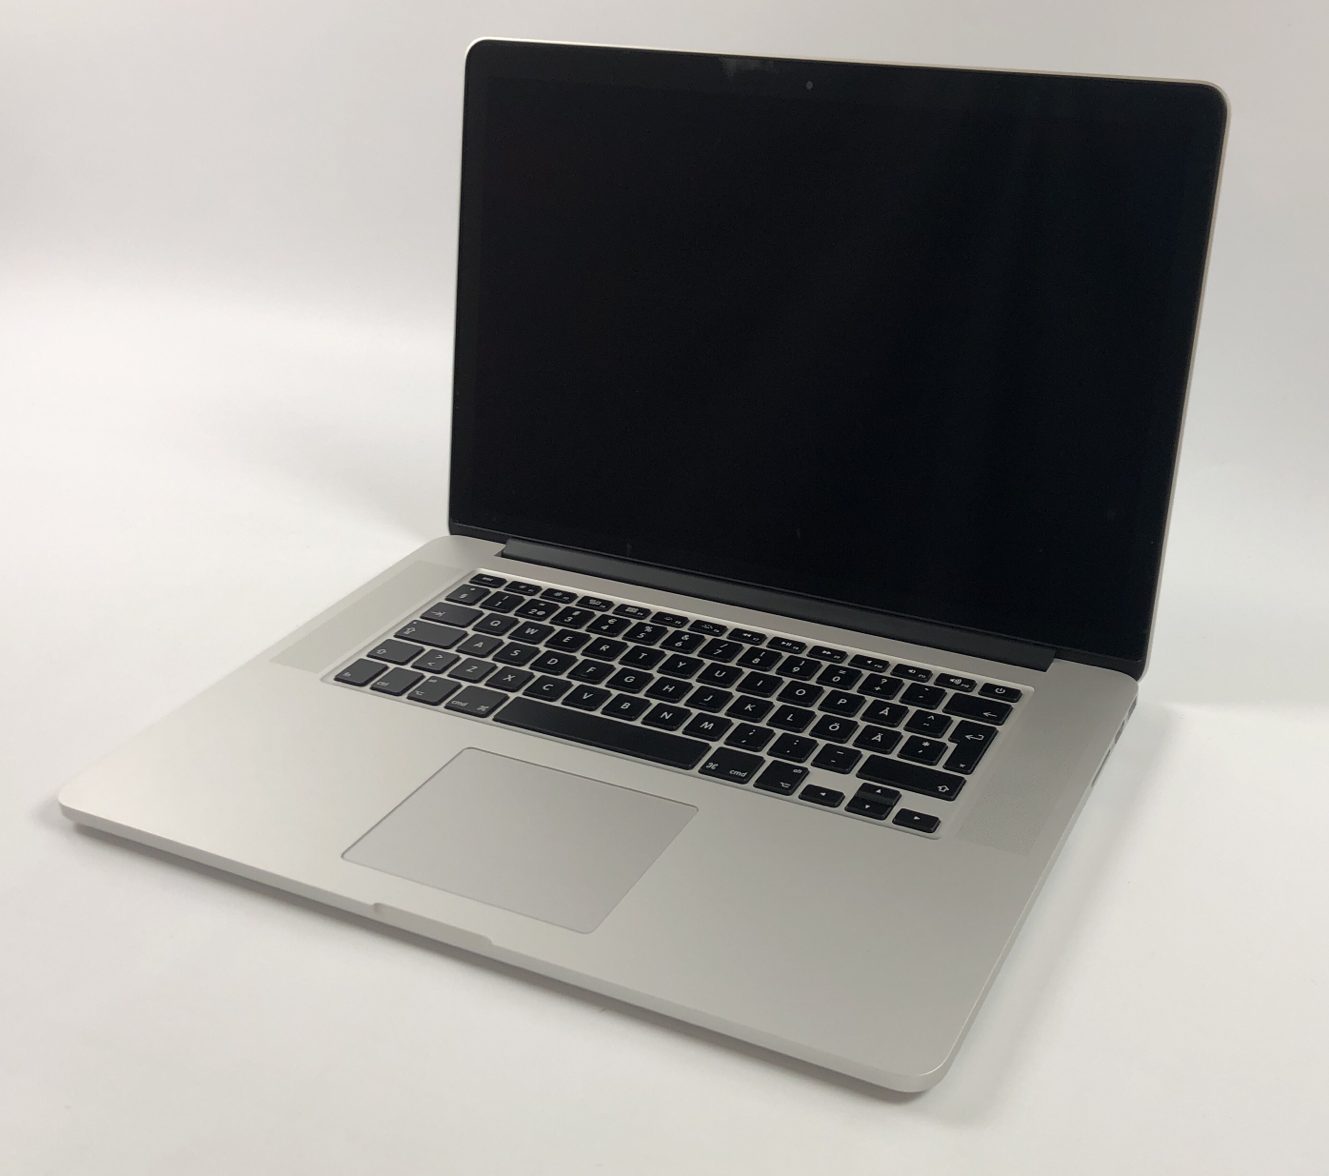 MacBook Pro Retina 15" Mid 2015 (Intel Quad-Core i7 2.2 GHz 16 GB RAM 256 GB SSD), Intel Quad-Core i7 2.2 GHz, 16 GB RAM, 256 GB SSD, image 1